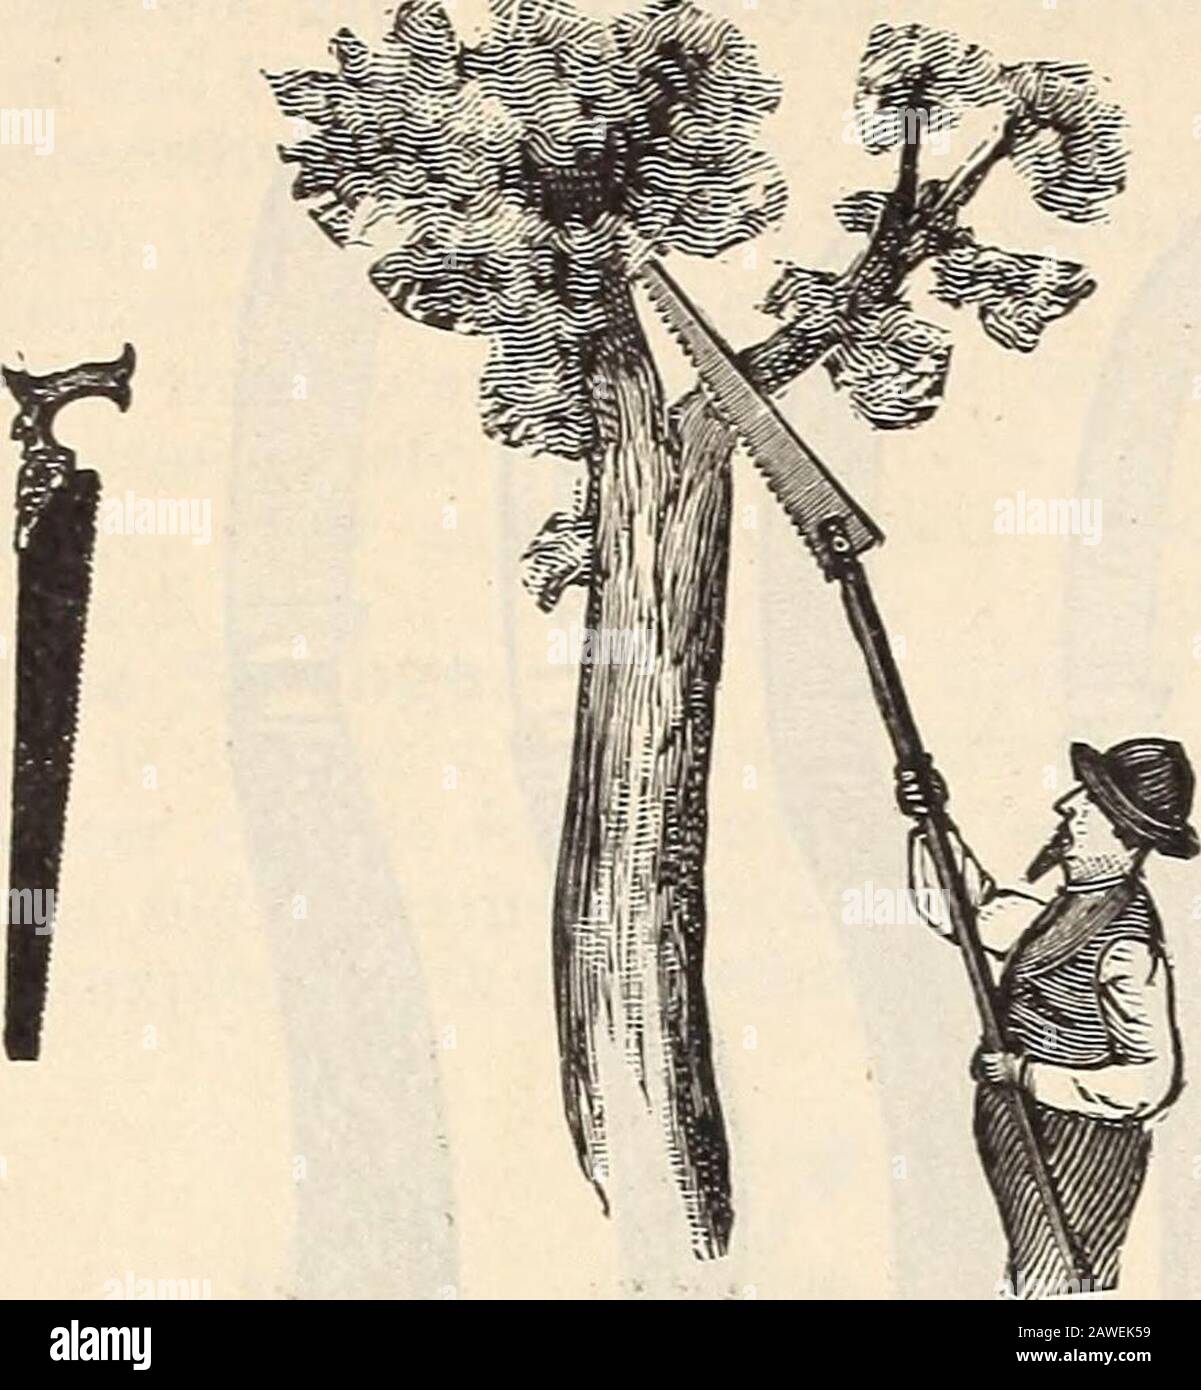 R& JFarquhar y Co'scatalog, 1897 : plantas de semillas probadas confiables, bulbos herramientas de fertilizantes, etc. . Cizallas De Pruning Perfectas. Por muchos jardineseste estilo de poda es muy estimado. Irice, 7 pulgadas, 1.75 ; 8 pulgadas, 2.25 ; 9 pulgadas, 2.75 ; lo-pulgadas, 3.25. Cizallas De Ramal O De Popa. Para cortar ramas laige; mangos largos, estilout; muy fuertes, y de la mejor calidad.patrón americano. Tres tamaños, 1.25, 1.75, 2.25, cada patrón inglés de Saynors. Tres tamaños, 3 50, 4.00, 4.50 cada uno. Sierras de podar. Cuchillas largas y estrechas para podar. Varios tamaños. .So a 1.25.Sierra de podar con Chisel. Dos patrones, 1.5 y 1 Foto de stock